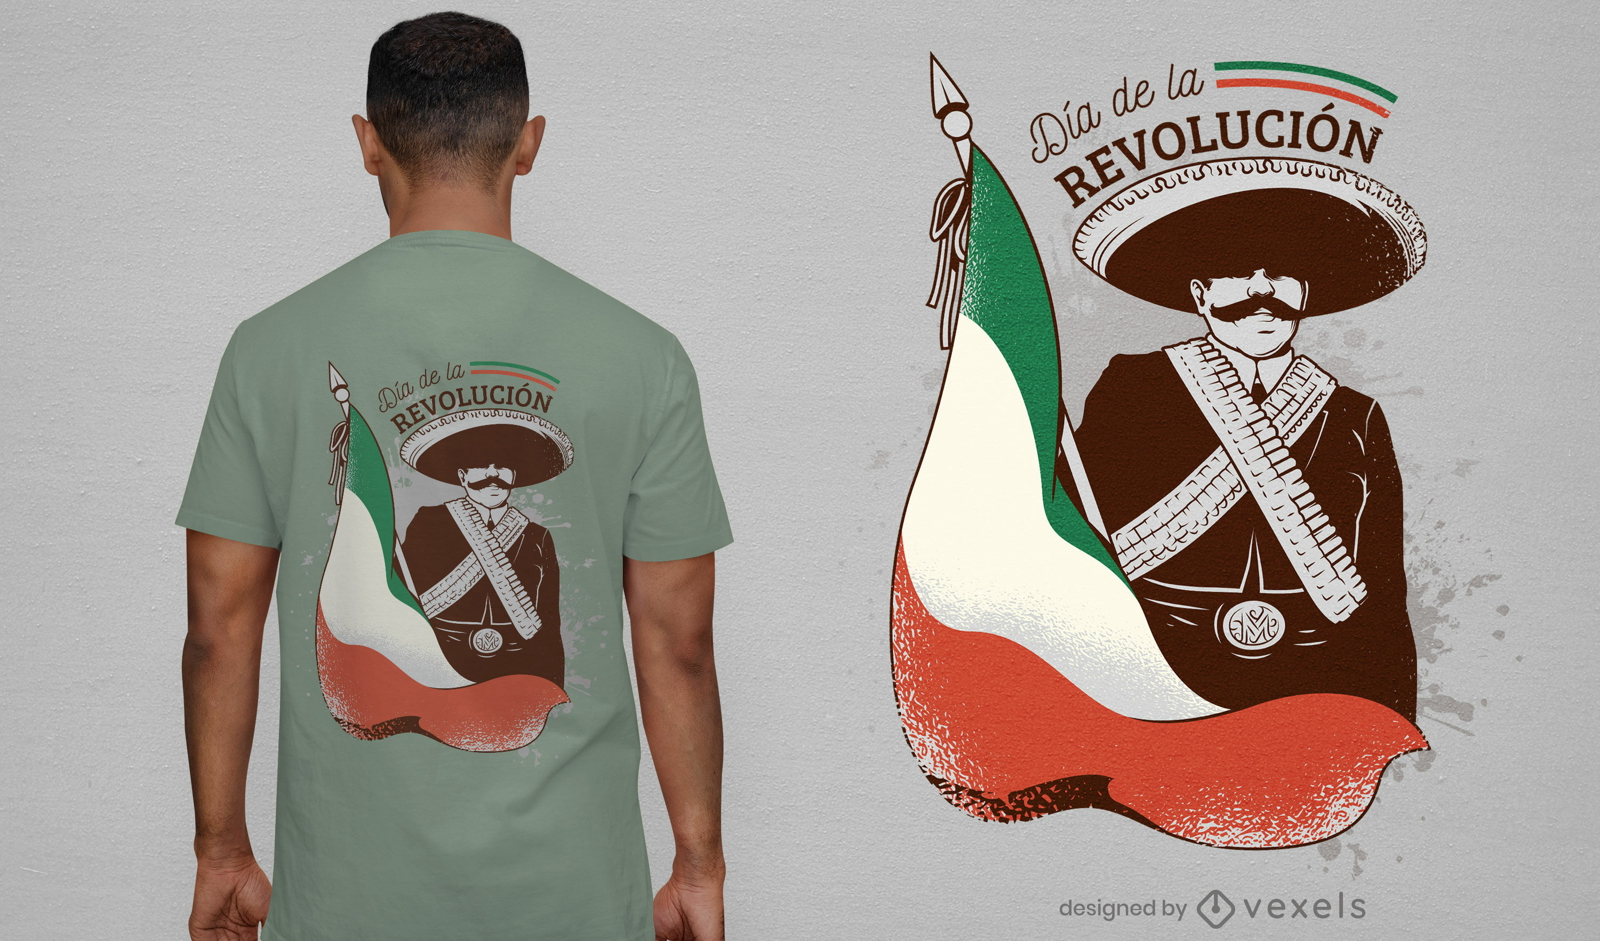 Dise?o de camiseta del d?a de la revoluci?n mexicana.